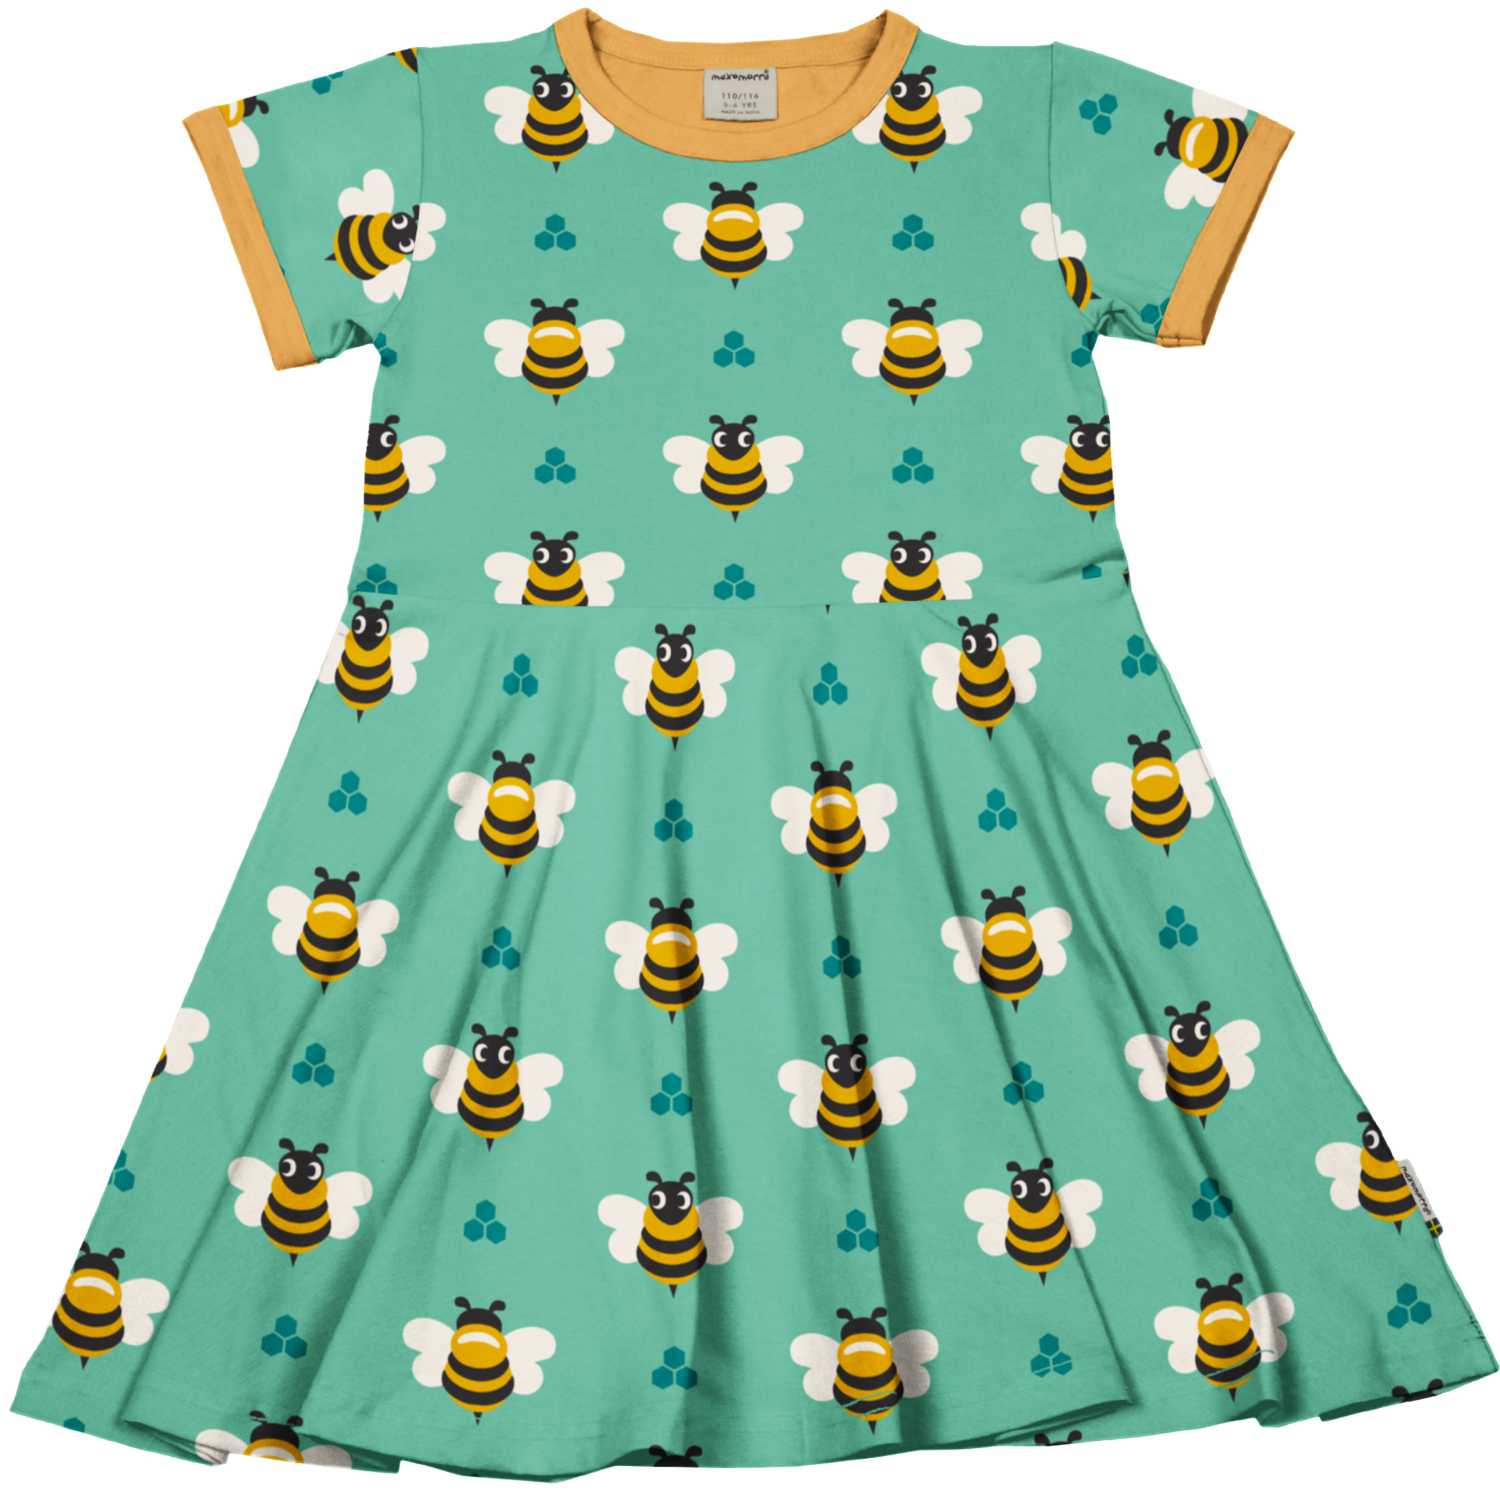 Maxomorra Bee Circle Dress Ss24 Clothing 3-4YRS / Green,5-6YRS / Green,7-8YRS / Green